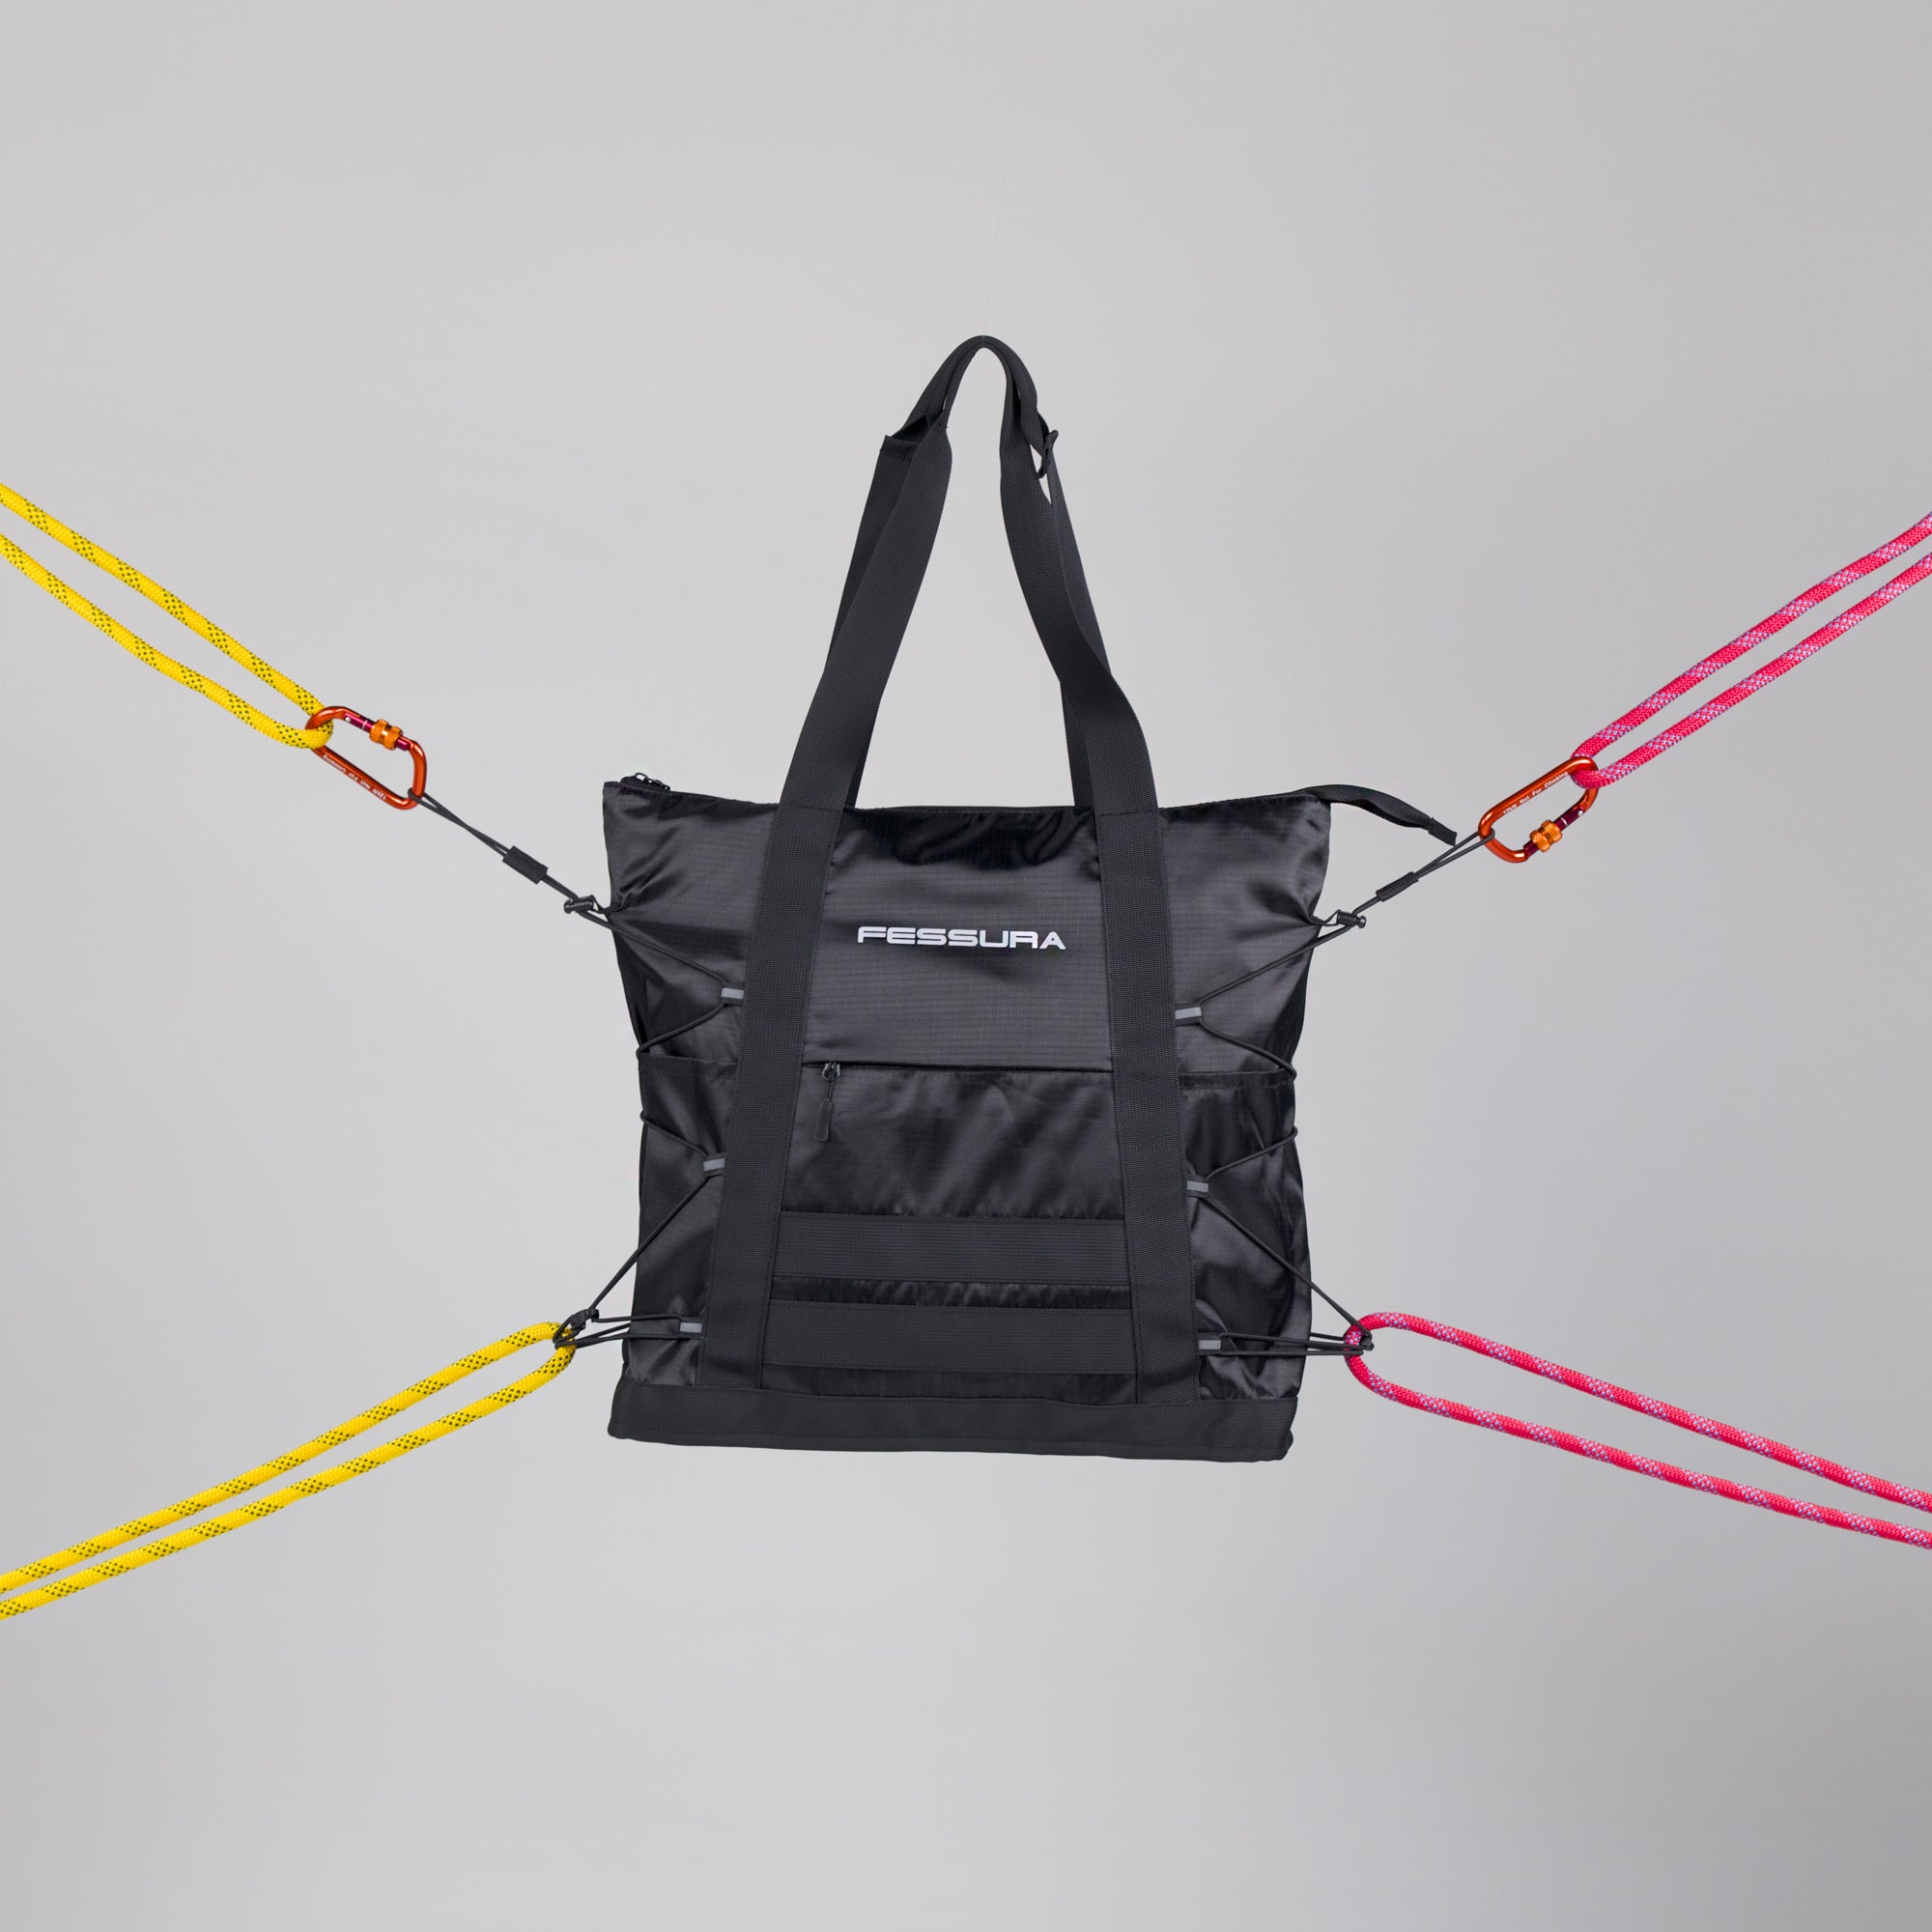 BAG01: l'accessorio unico che unisce glamour e funzionalità outdoor